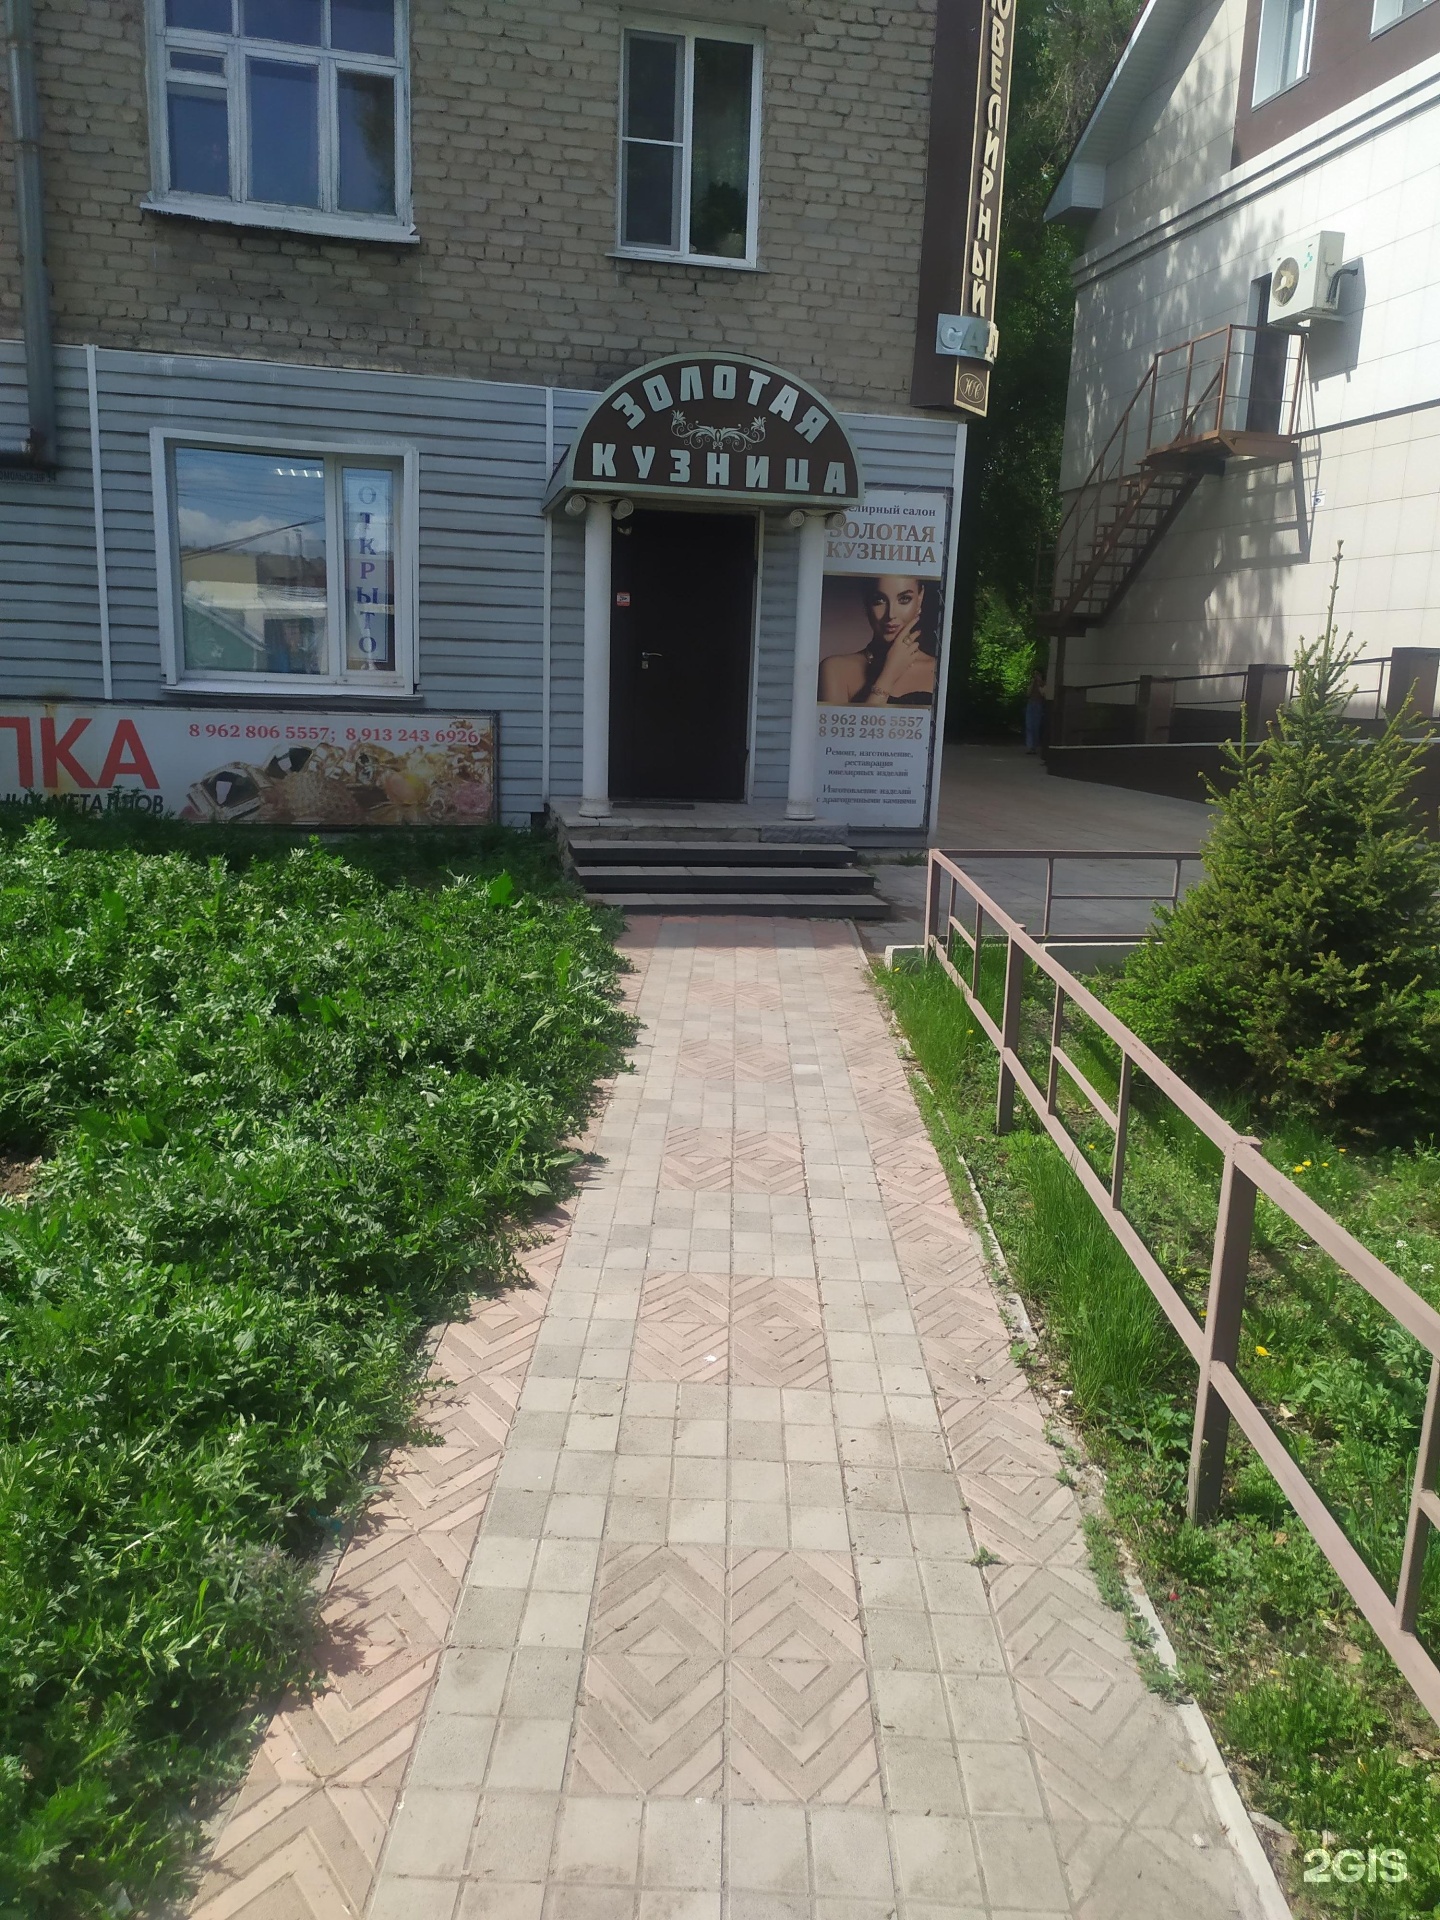 Золотая кузница, ювелирная мастерская, Комсомольская улица, 94, Рубцовск —2ГИС